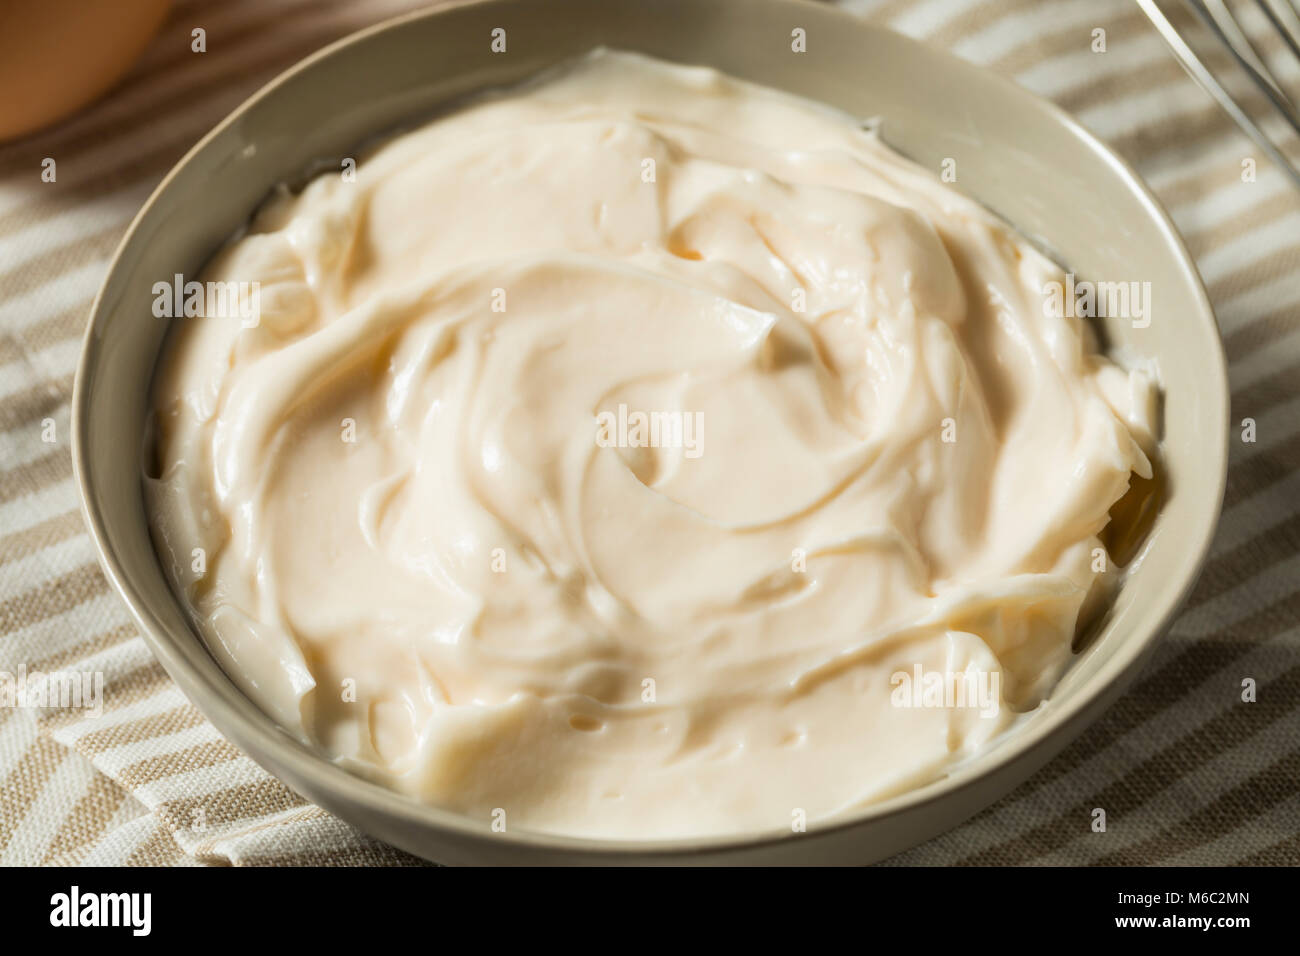 Organico sani la maionese fatta in casa in una ciotola Foto Stock